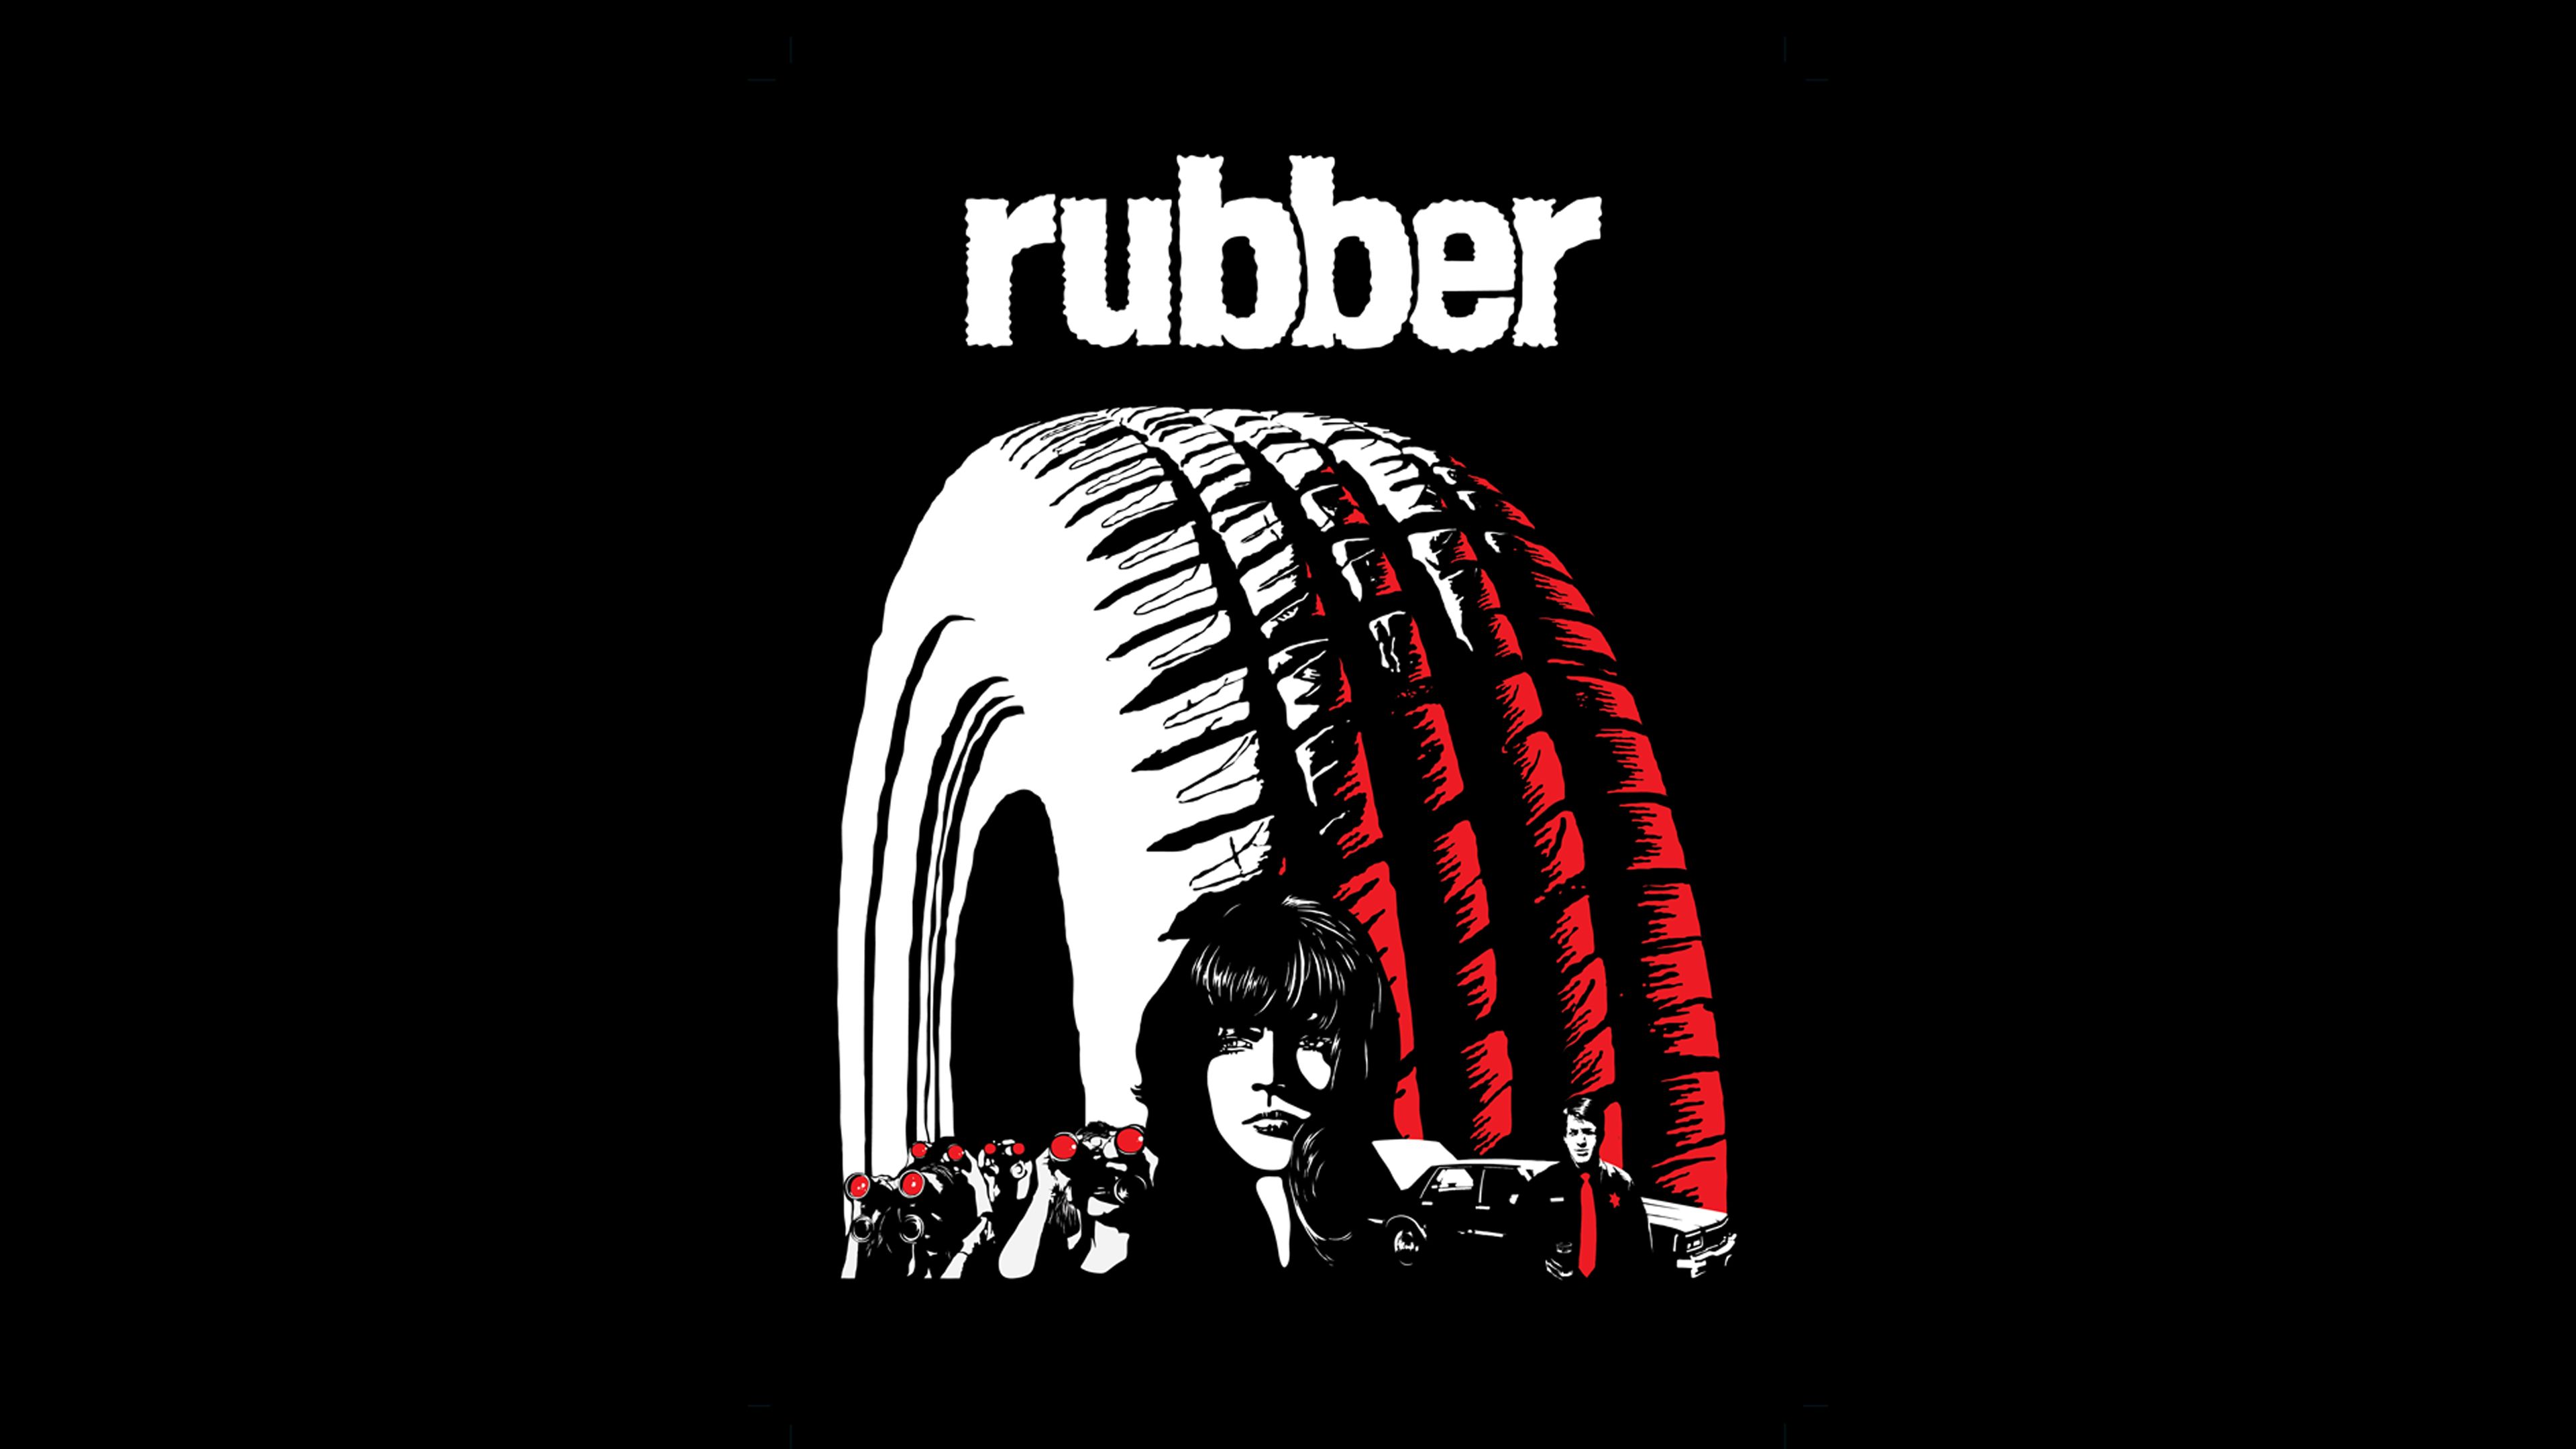 Rubber - Films - Acheter/Louer - Rakuten TV